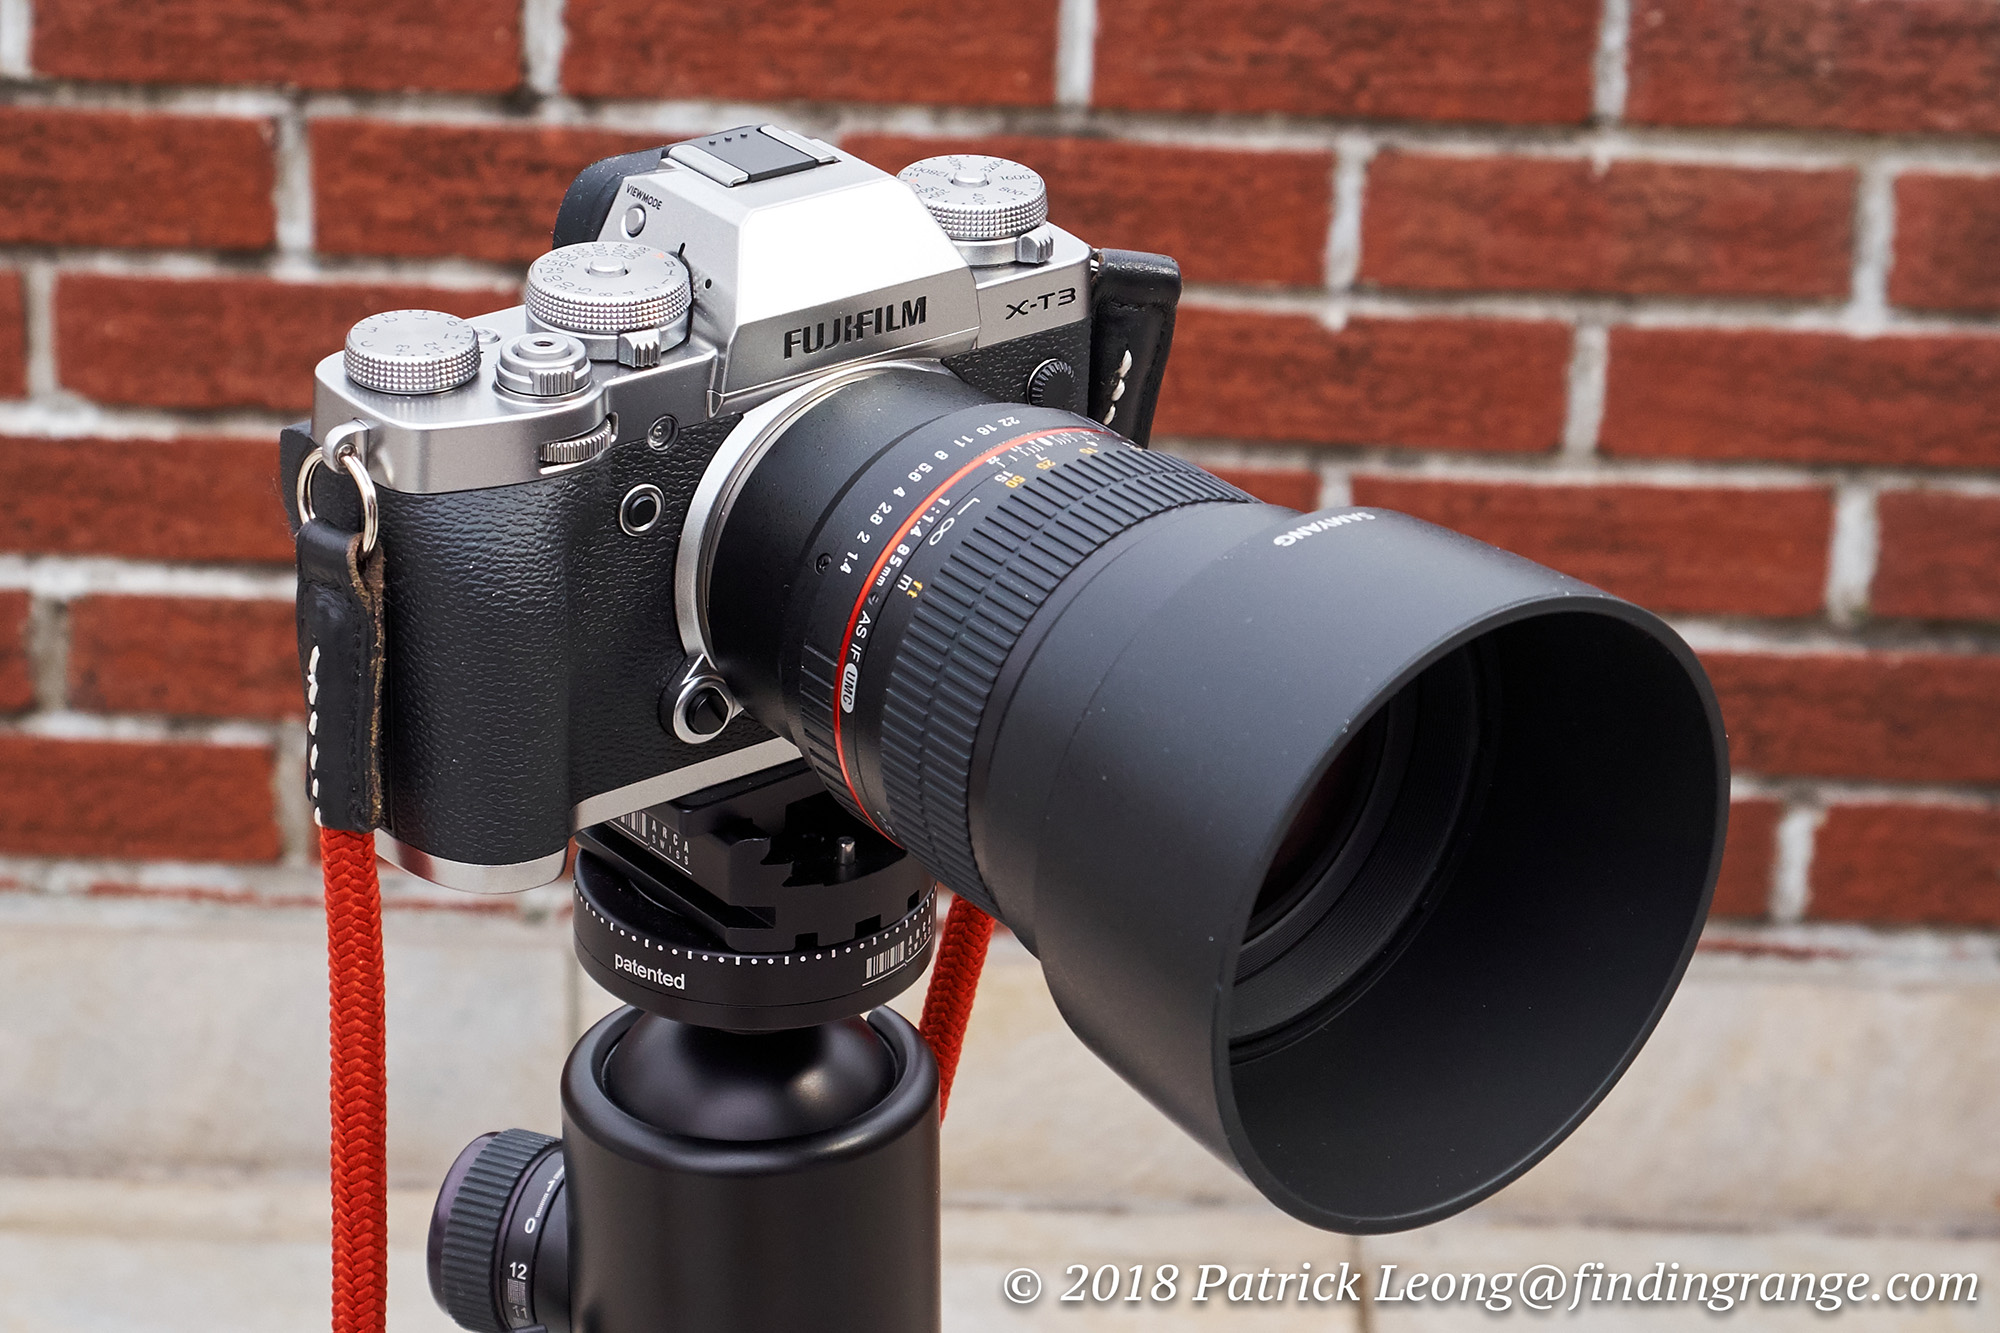 Samyang 85mm f1.4 Aspherical IF Lens Review Fuji X